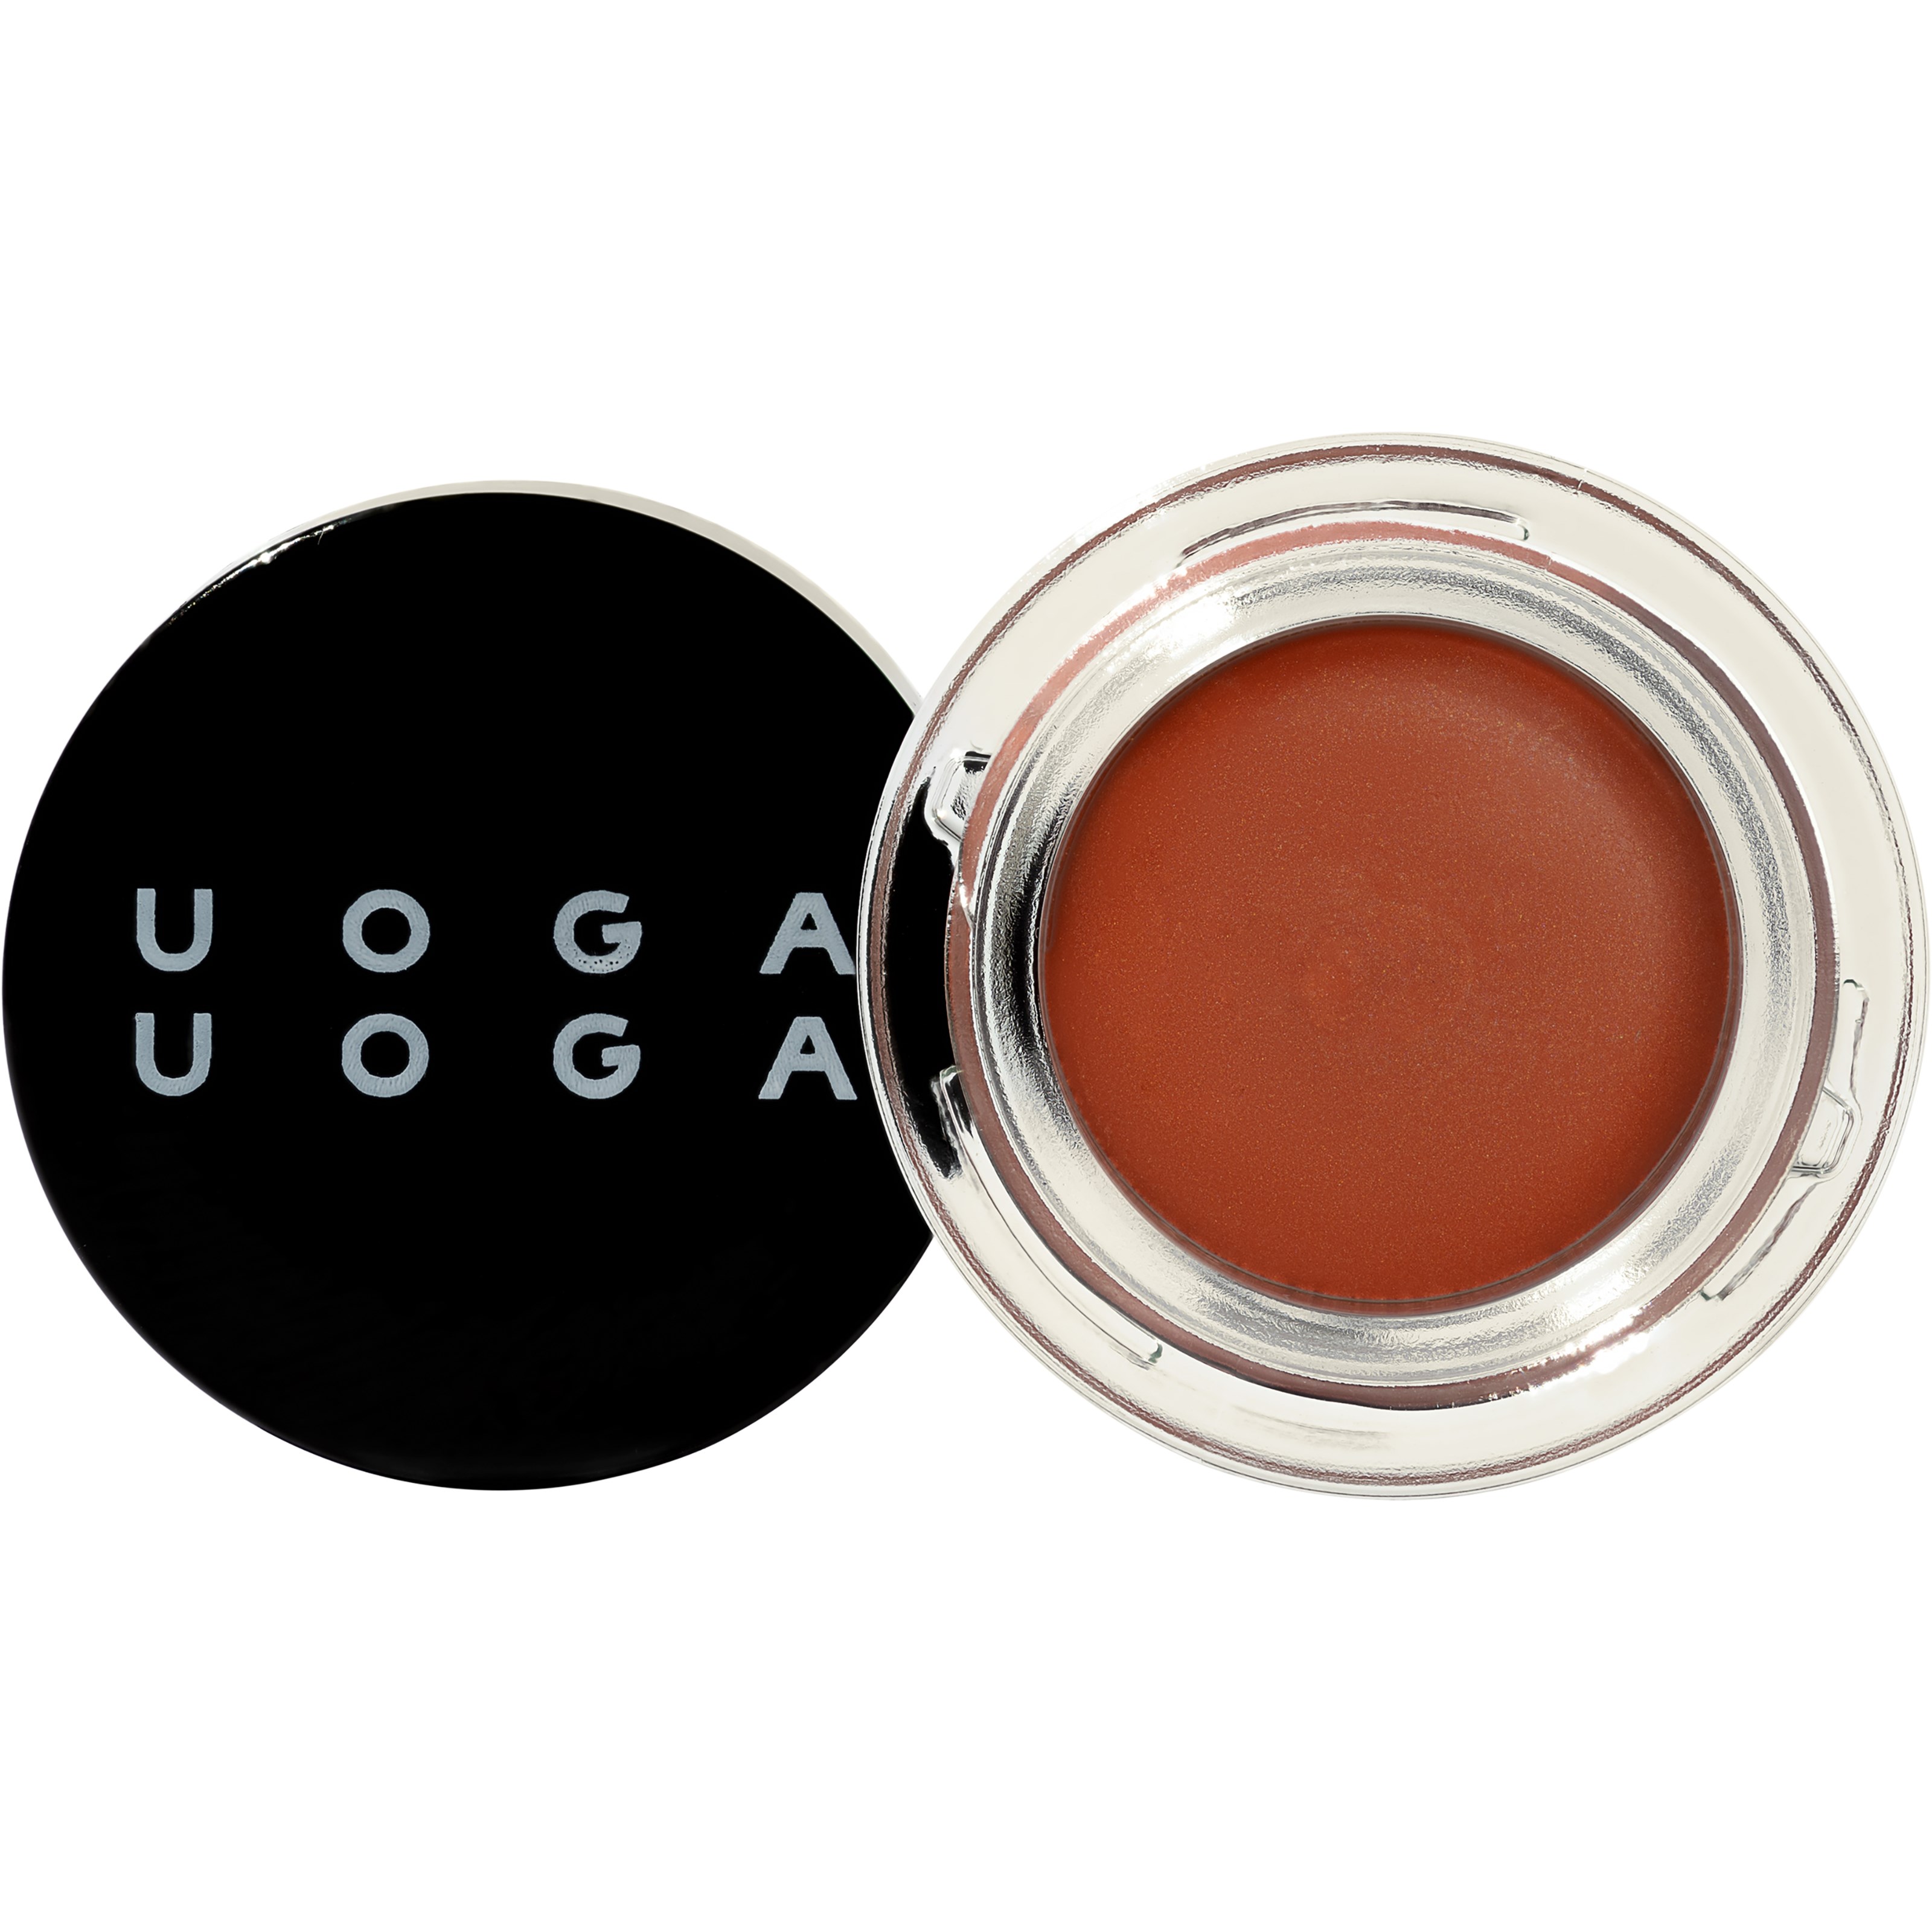 Bilde av Uoga Uoga Lip & Cheek Tint 2-in-1 Blush & Lip Colour Apricot